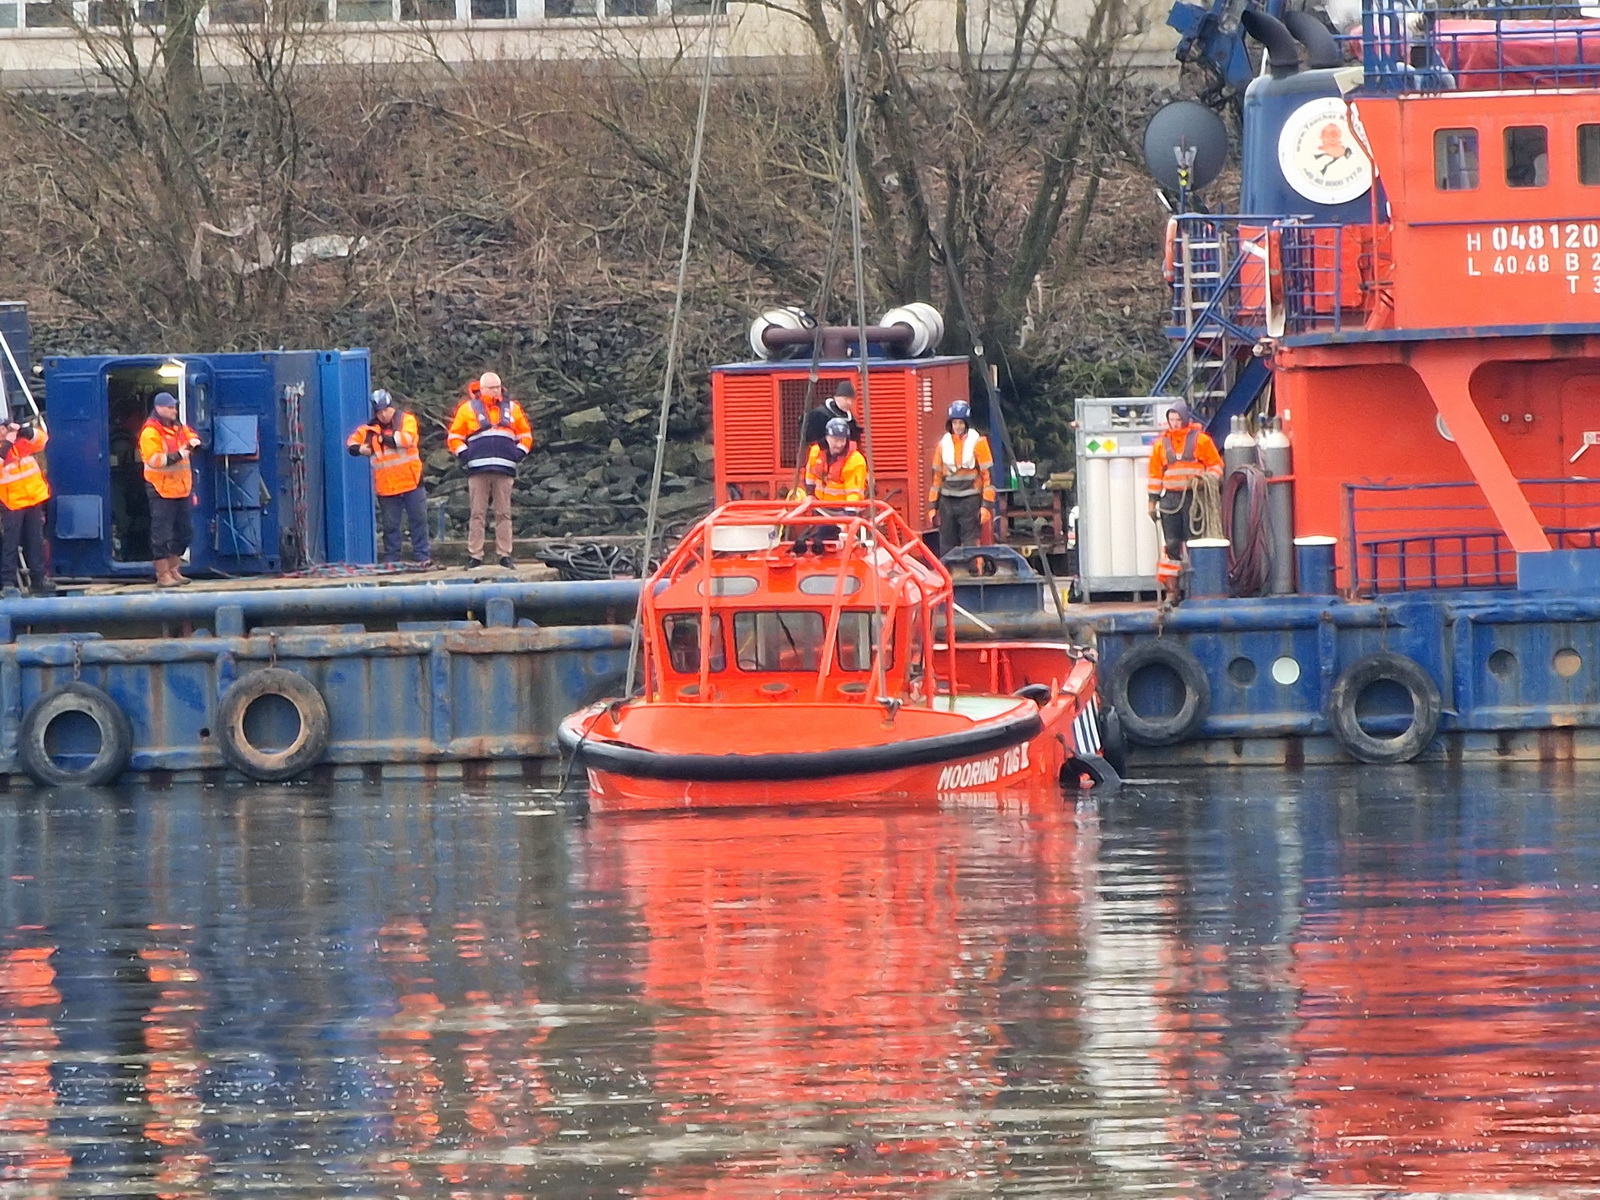 Nach Havarie im Hafen. Versunkenes Boot am Donnertag gehoben – Leichnam im Inneren gefunden